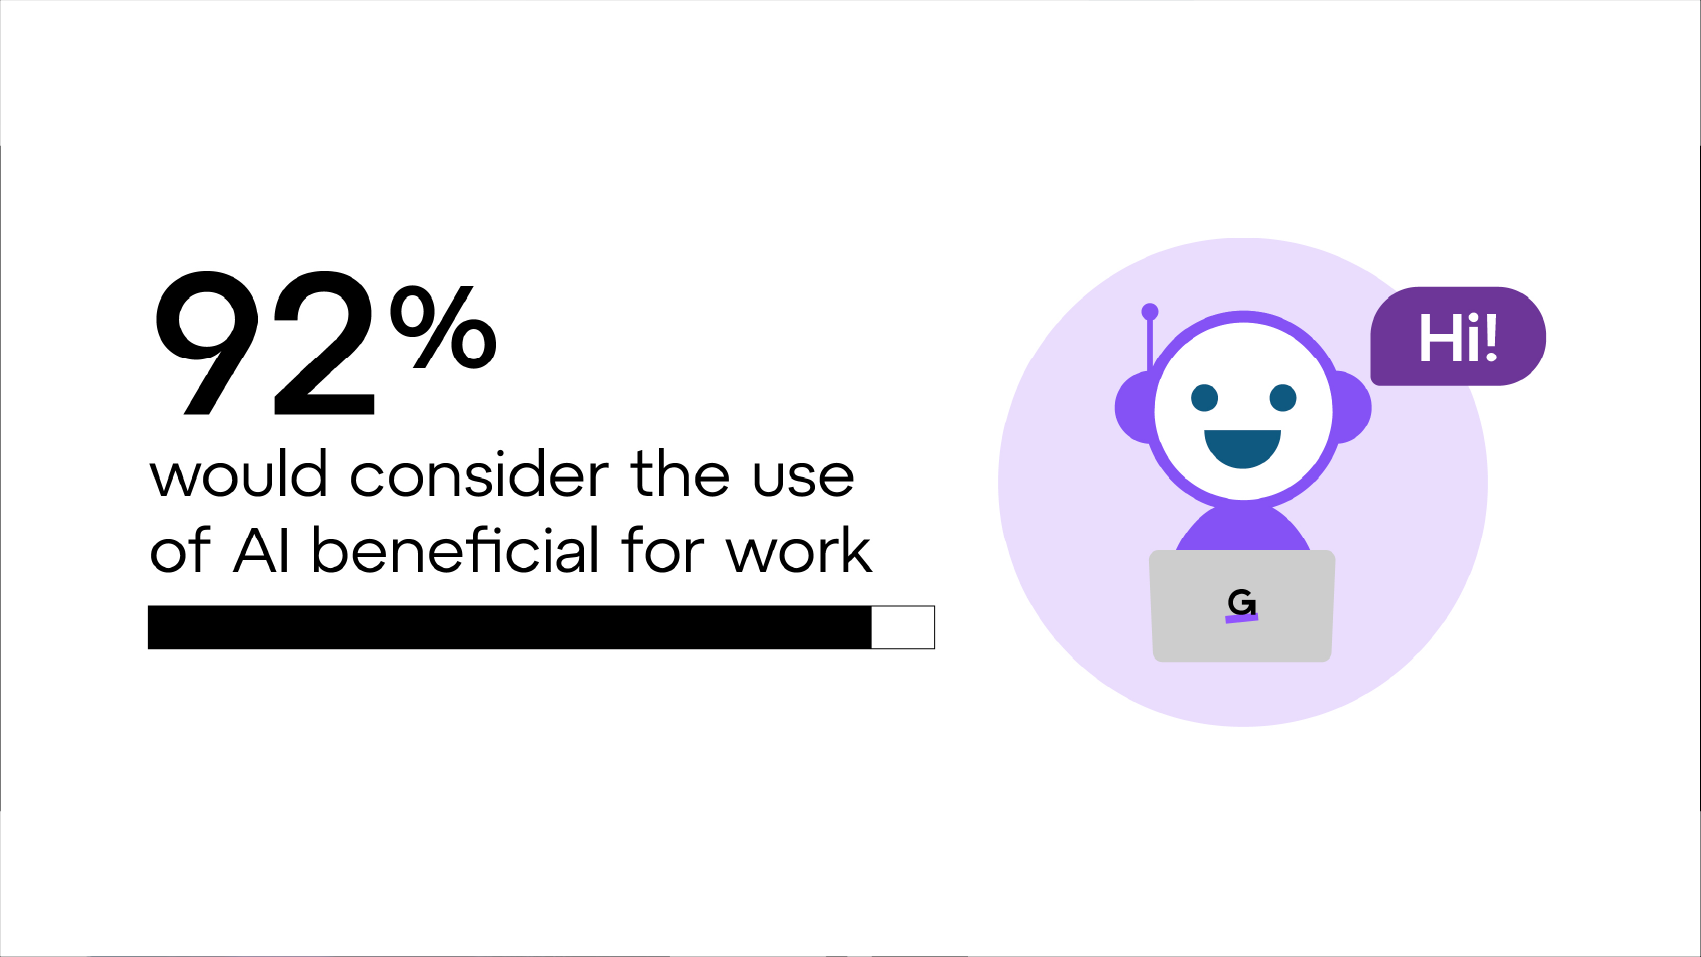 92 % des personnes interrogées considèrent que l'IA est une alliée dans leur travail.